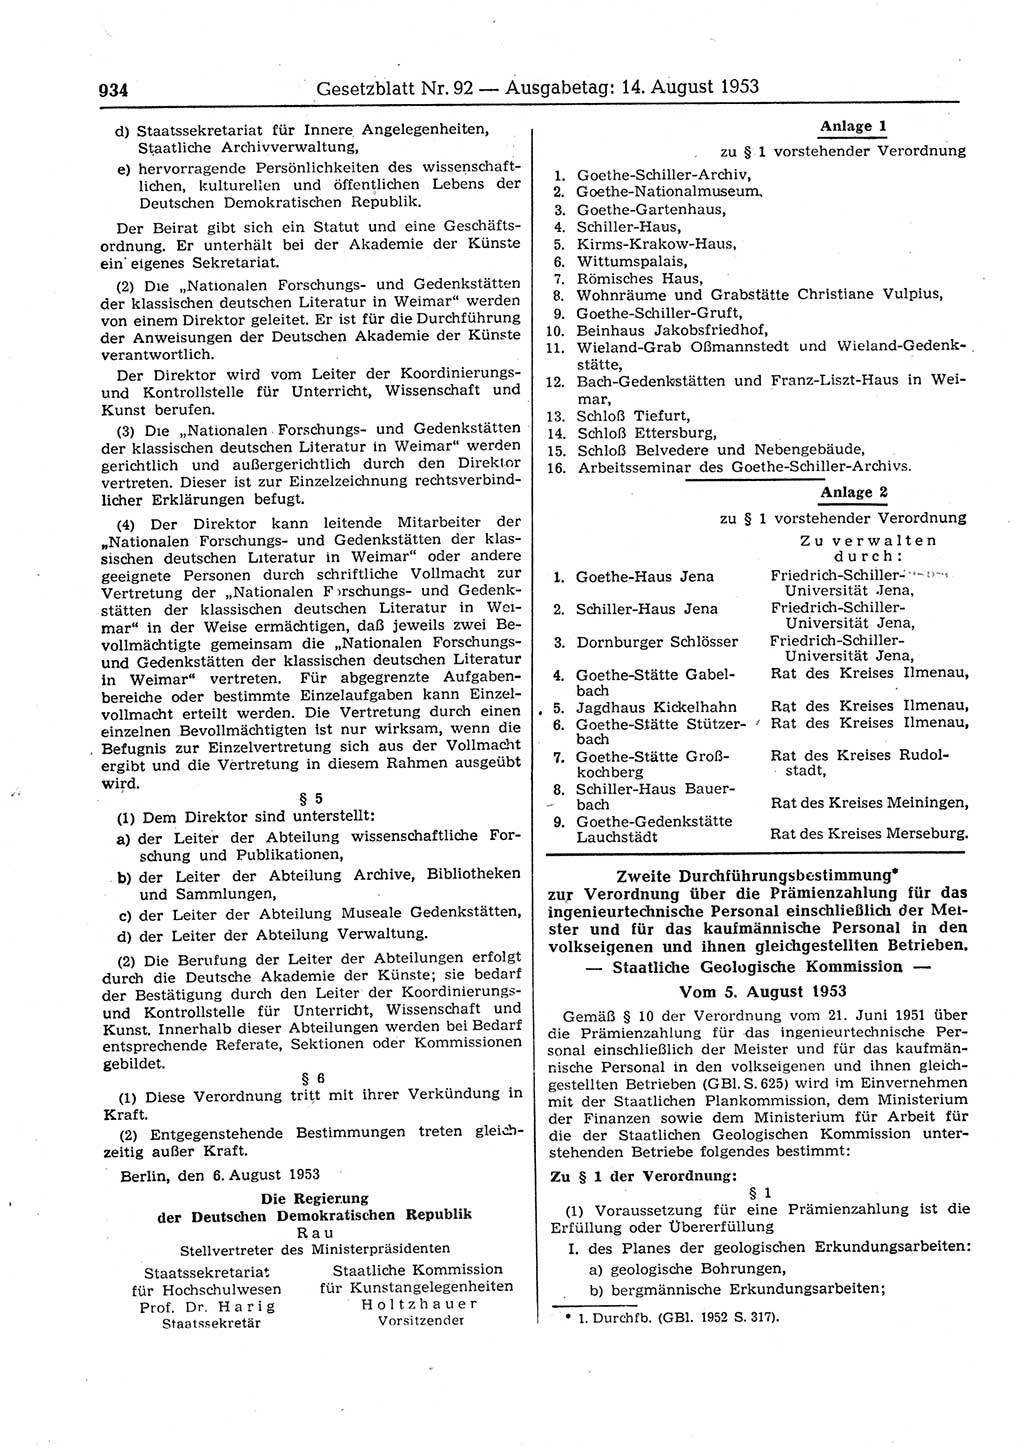 Gesetzblatt (GBl.) der Deutschen Demokratischen Republik (DDR) 1953, Seite 934 (GBl. DDR 1953, S. 934)